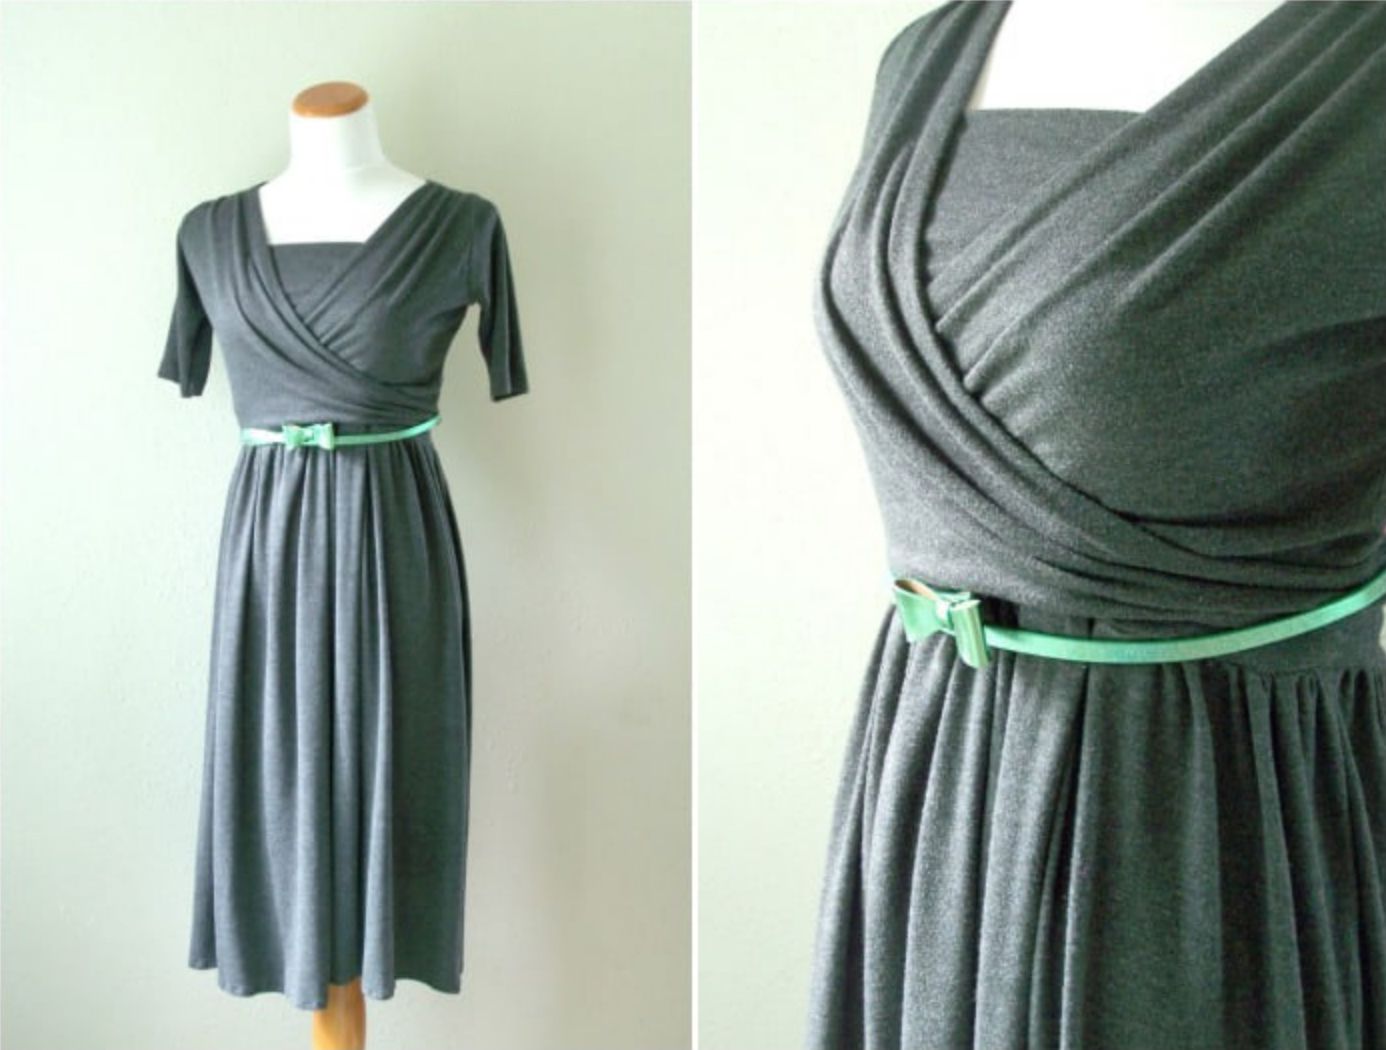 Two-Piece Knit Wrap Nursing Dress Pattern